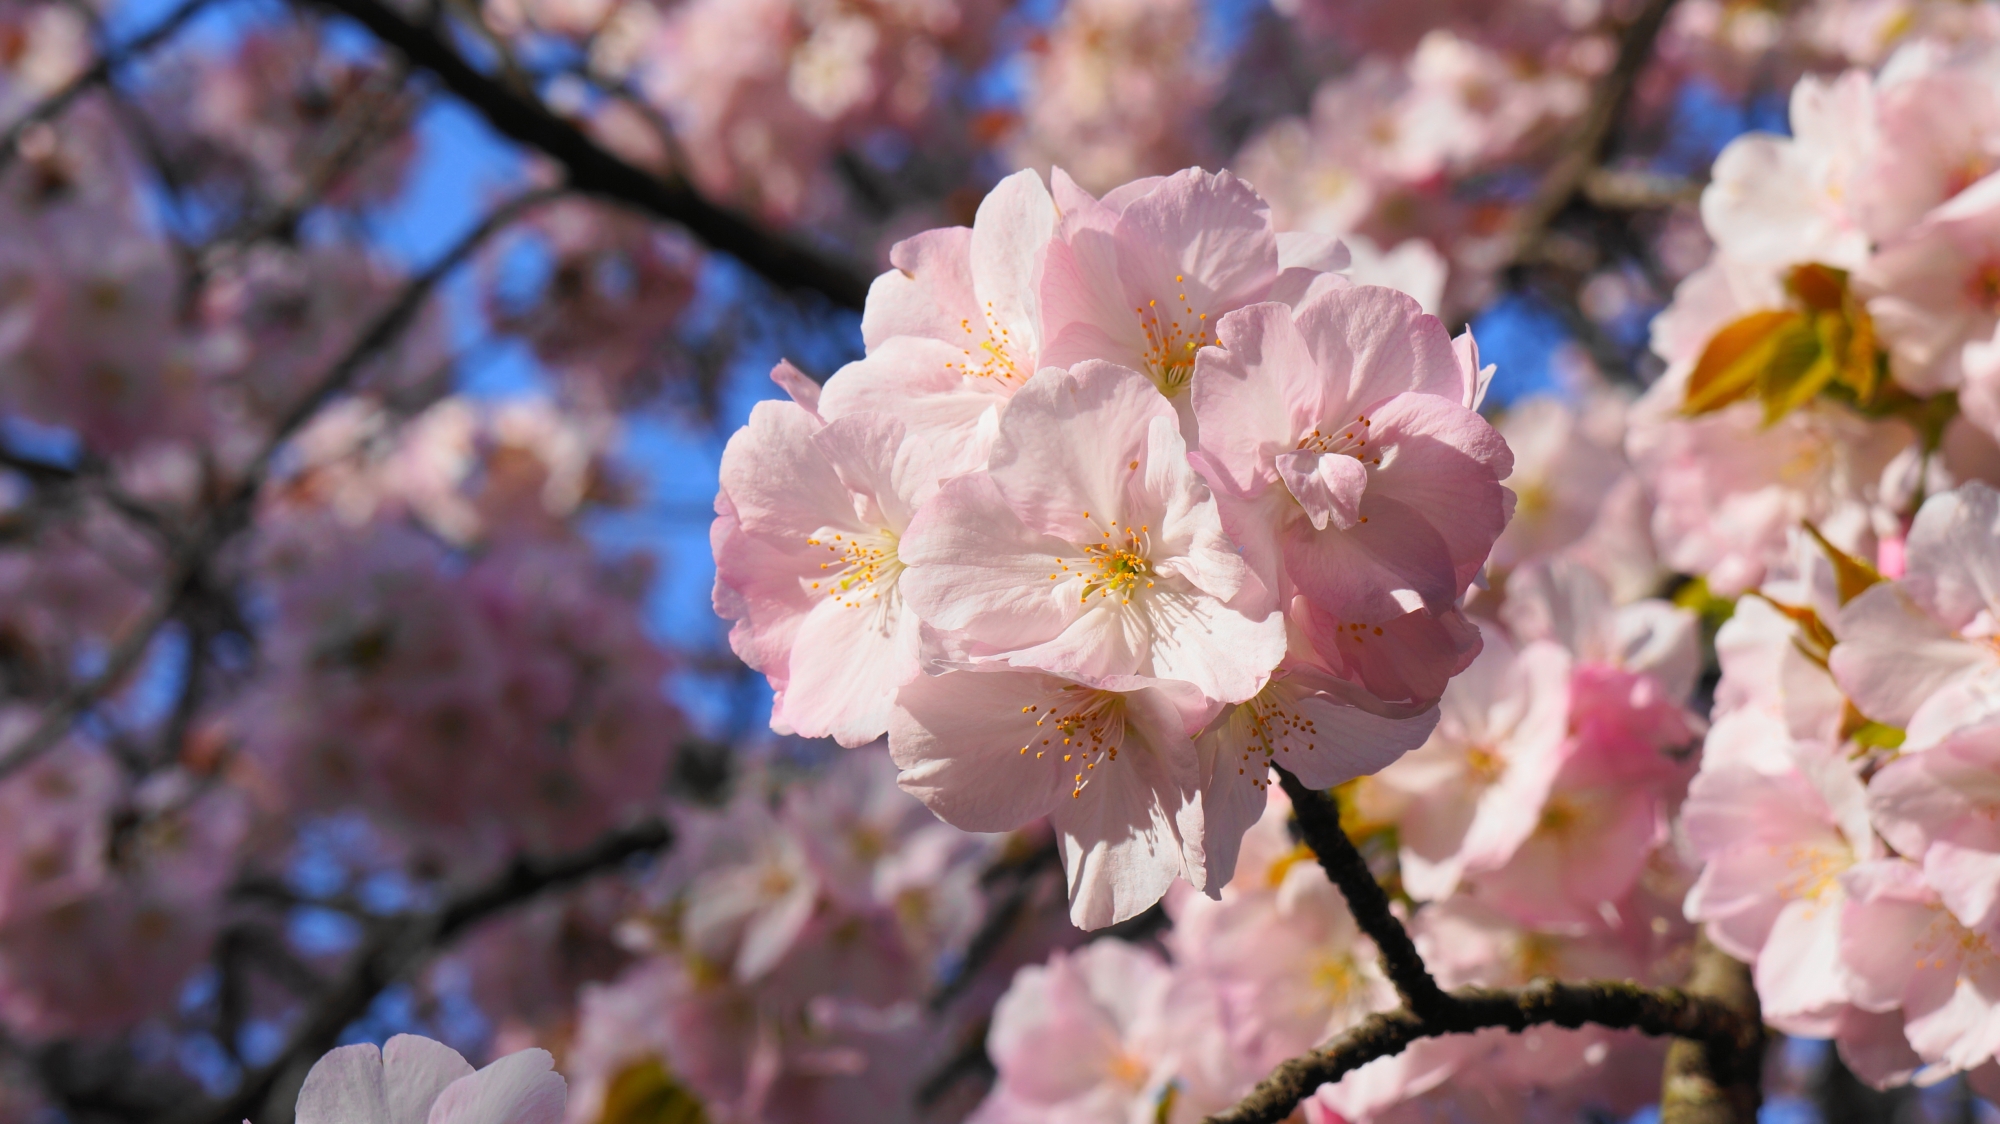 太陽が当たって華やかに輝くピンクの桜